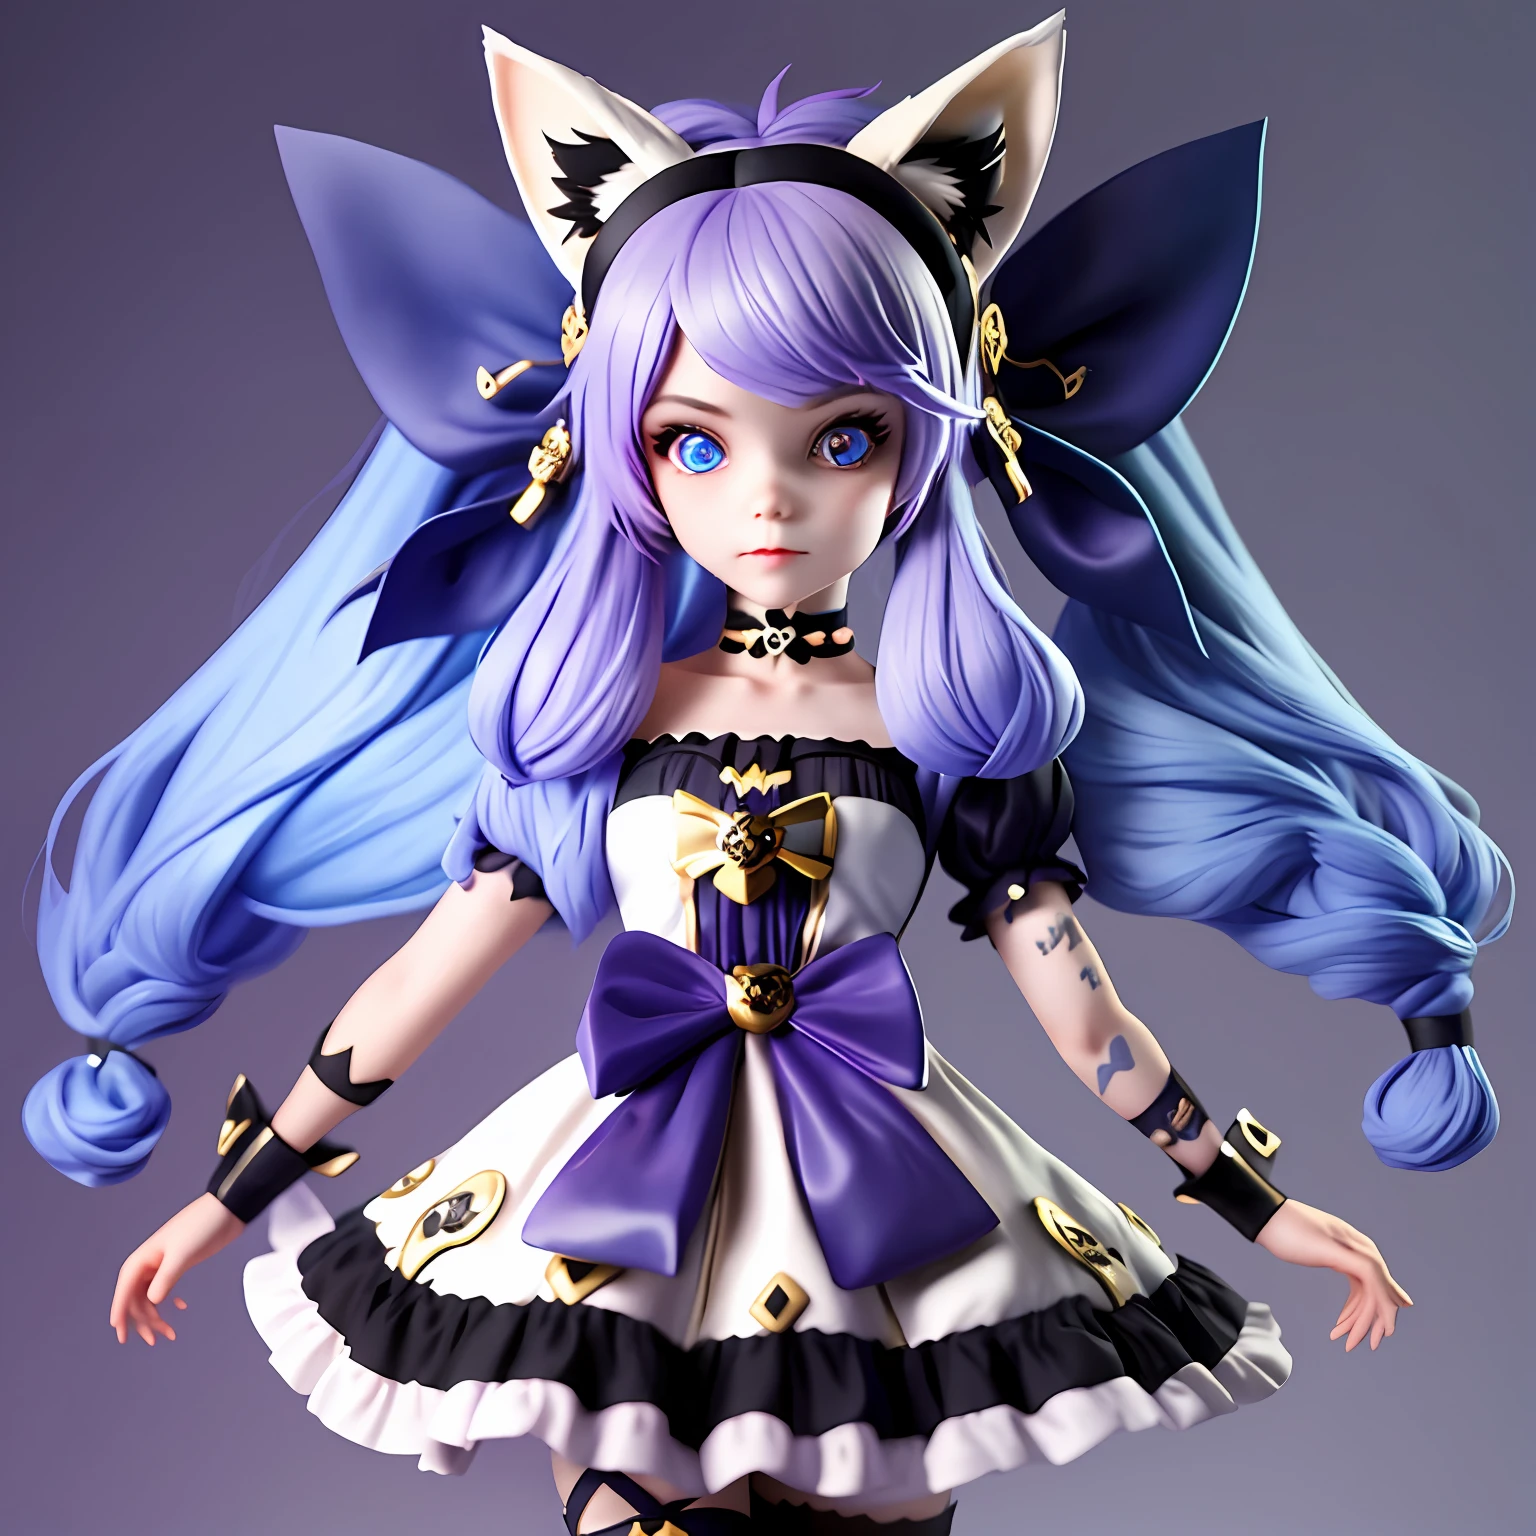 一个有着长长的紫色头发和蓝色眼睛、长着狐狸耳朵和尾巴的女孩穿着洛丽塔风格的服装，戴着黑色的双骷髅头带